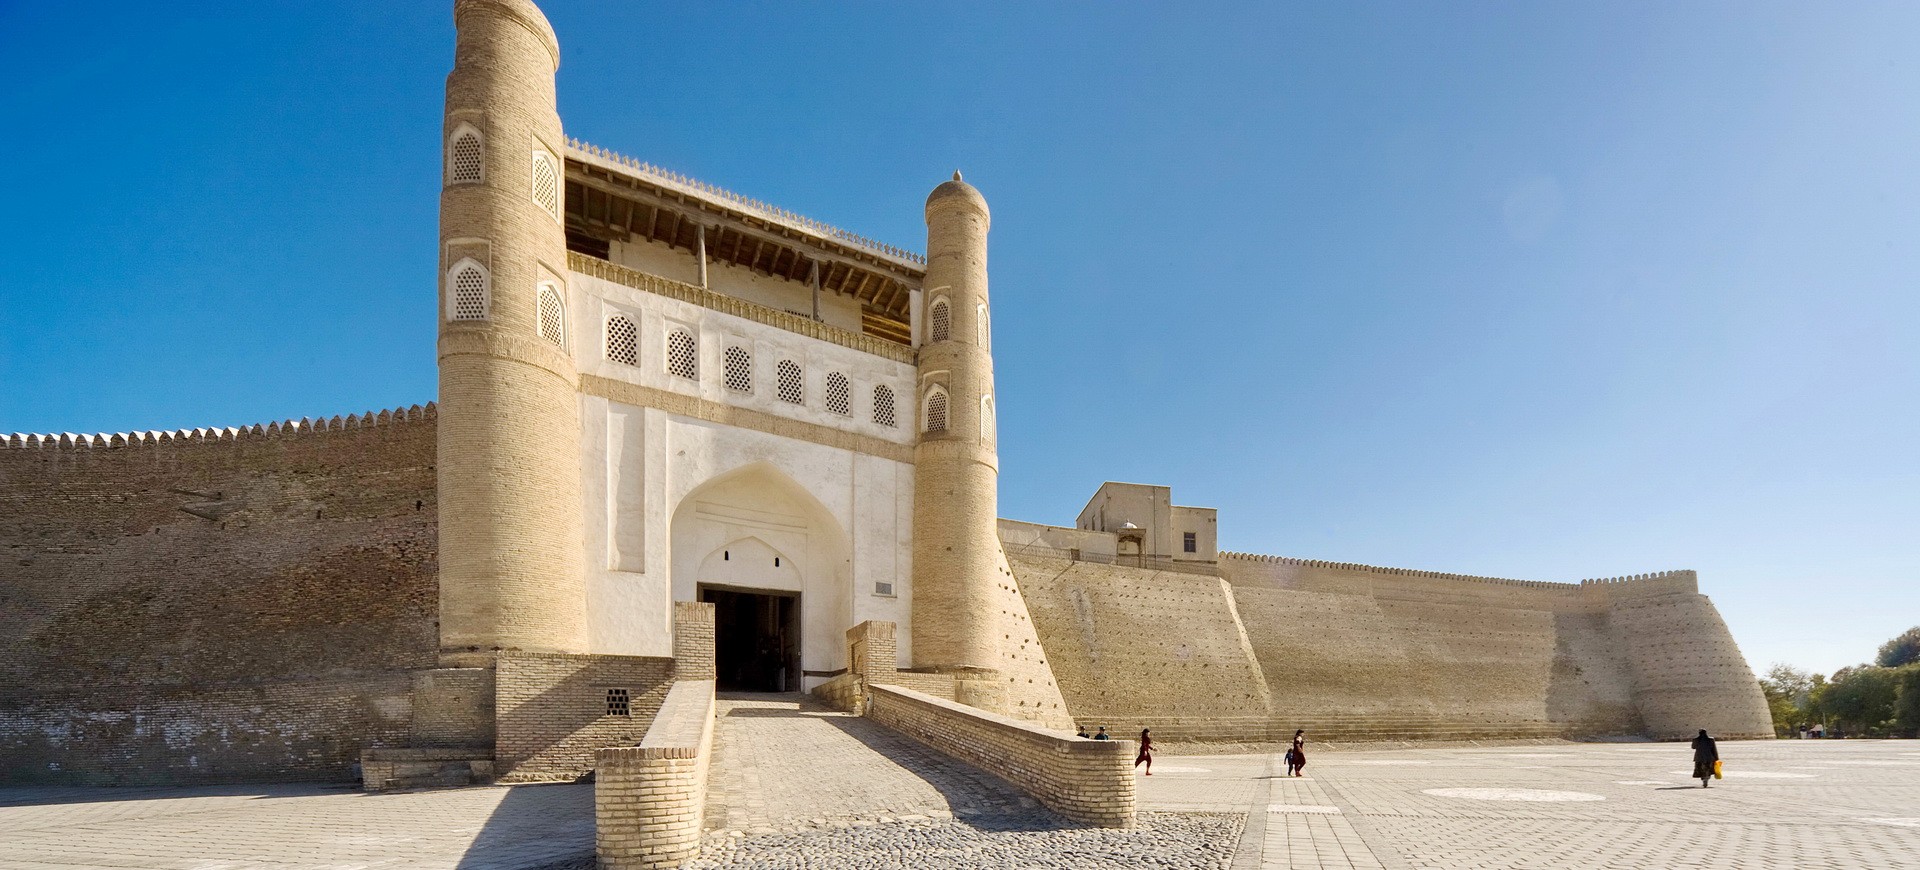 Ouzbékistan Bukhara Citadel Arc